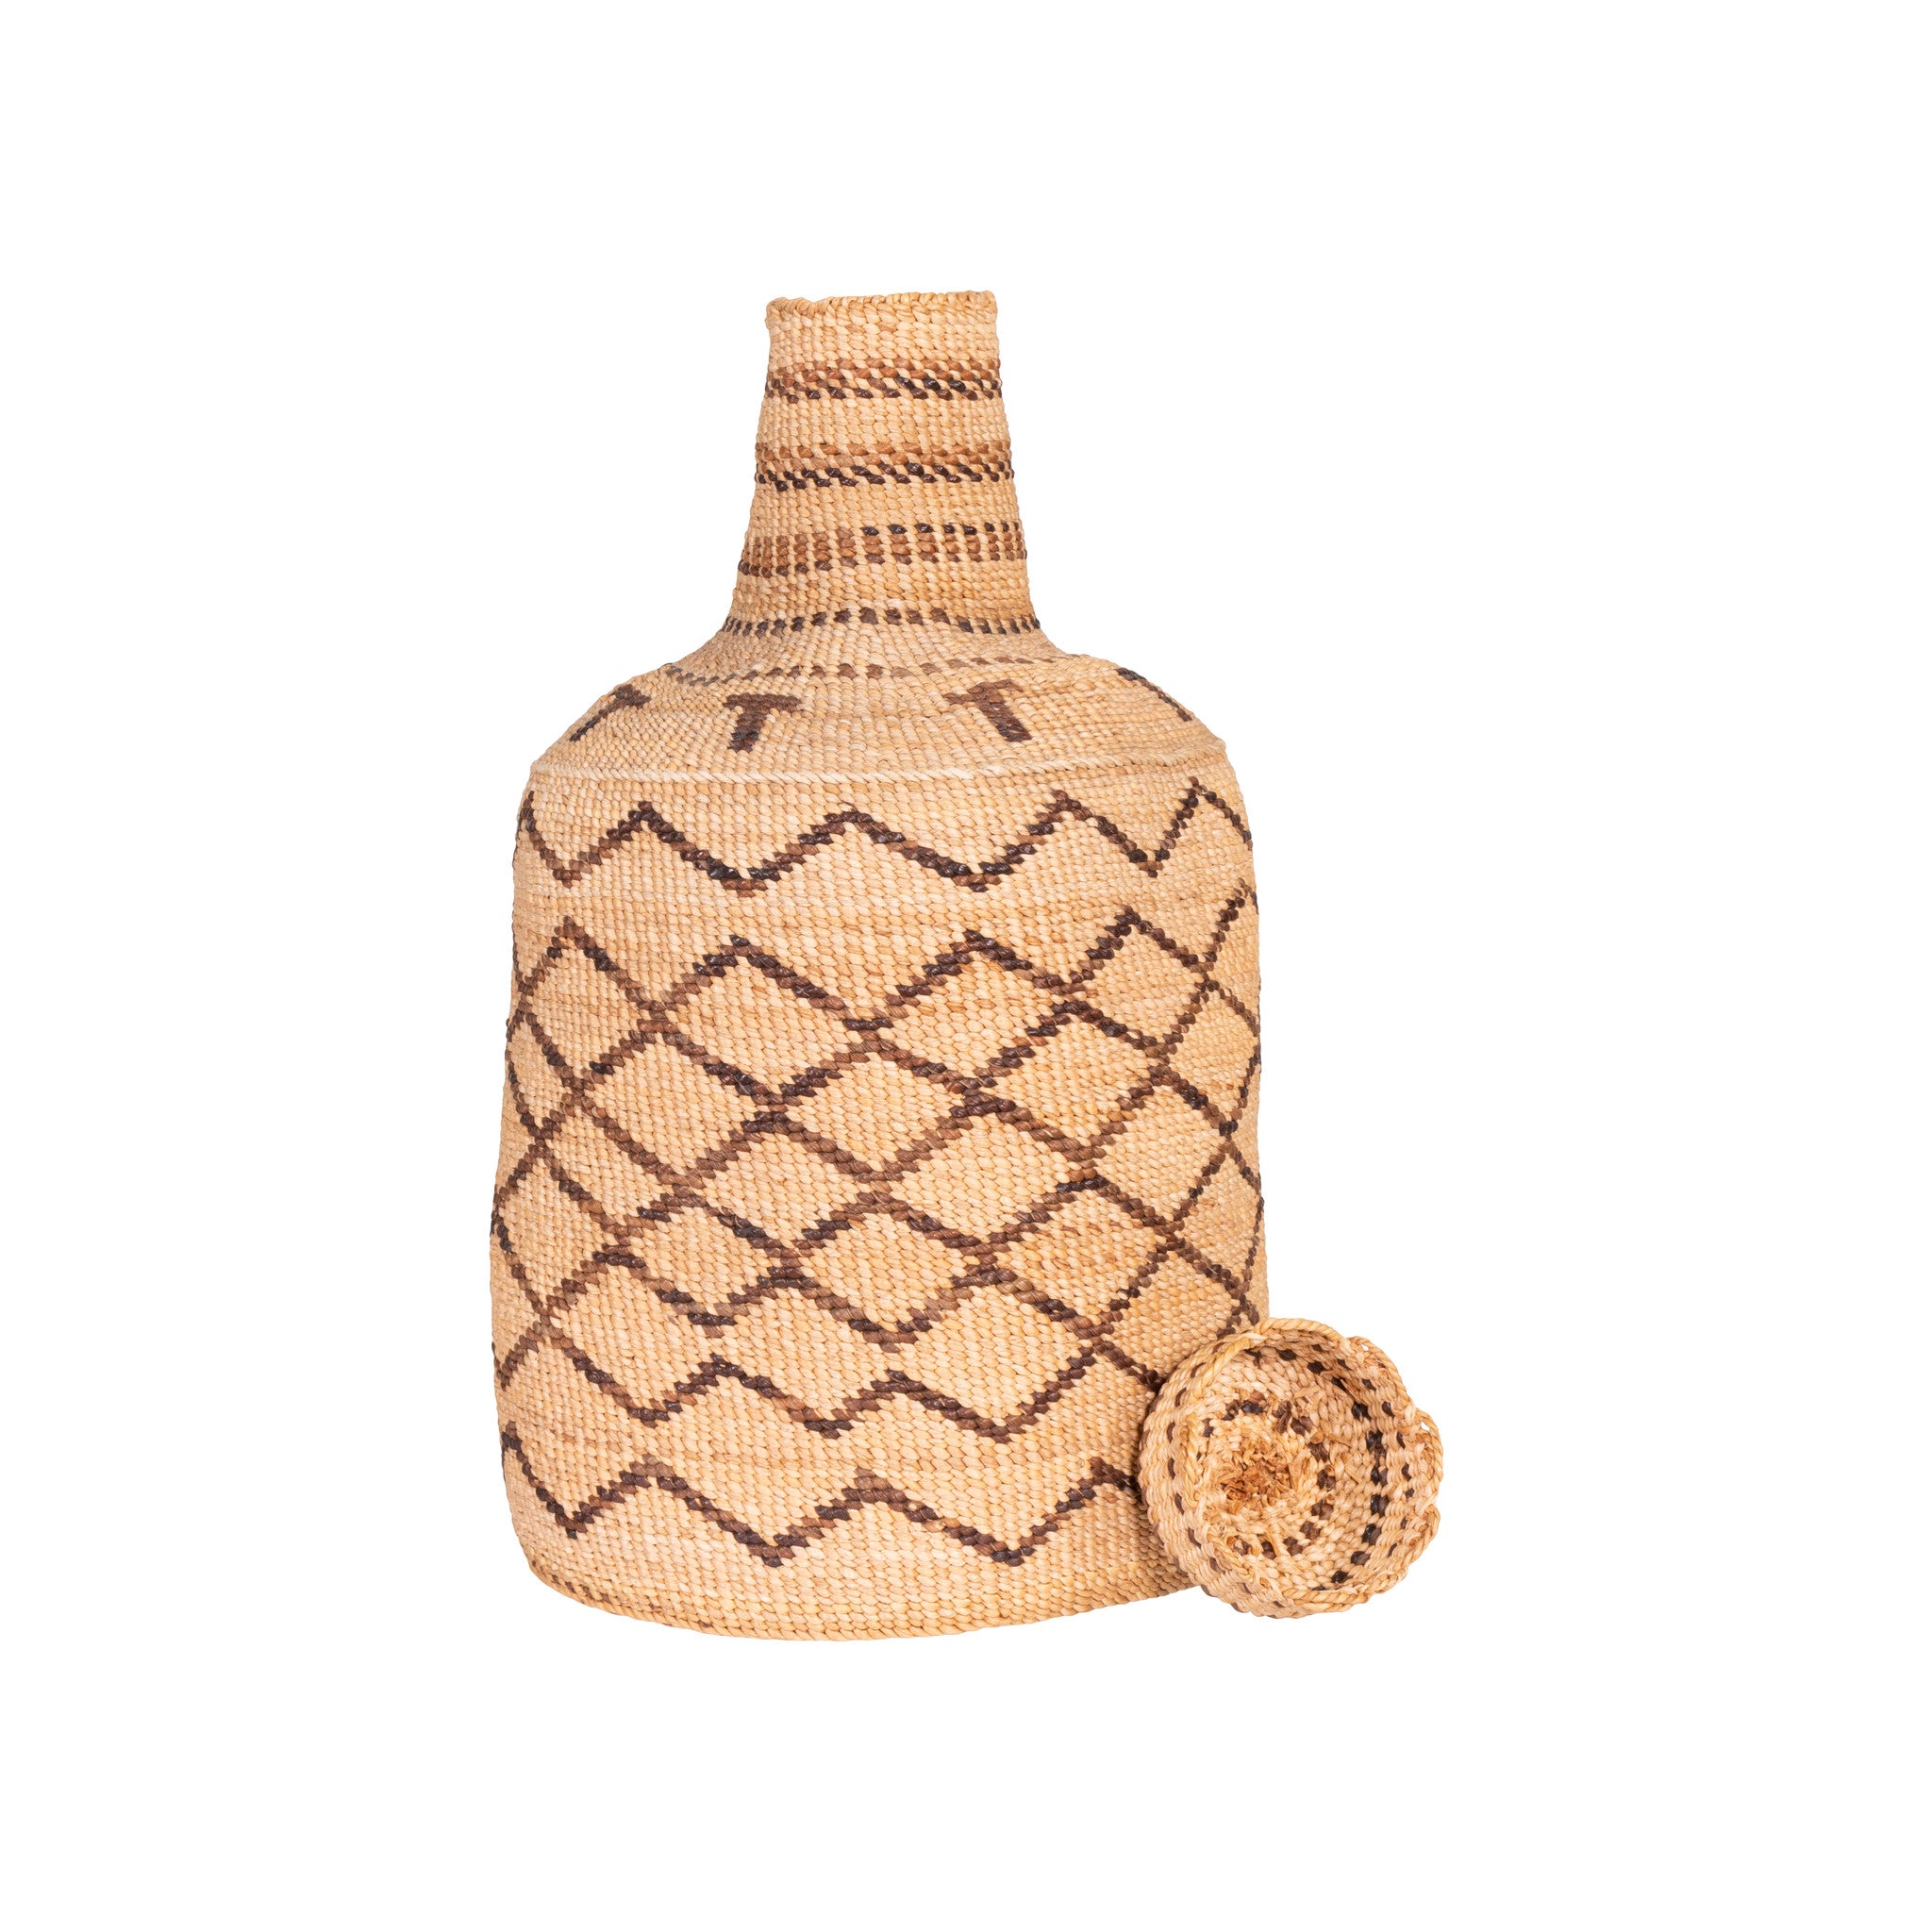 Klamath Basketry Bottle